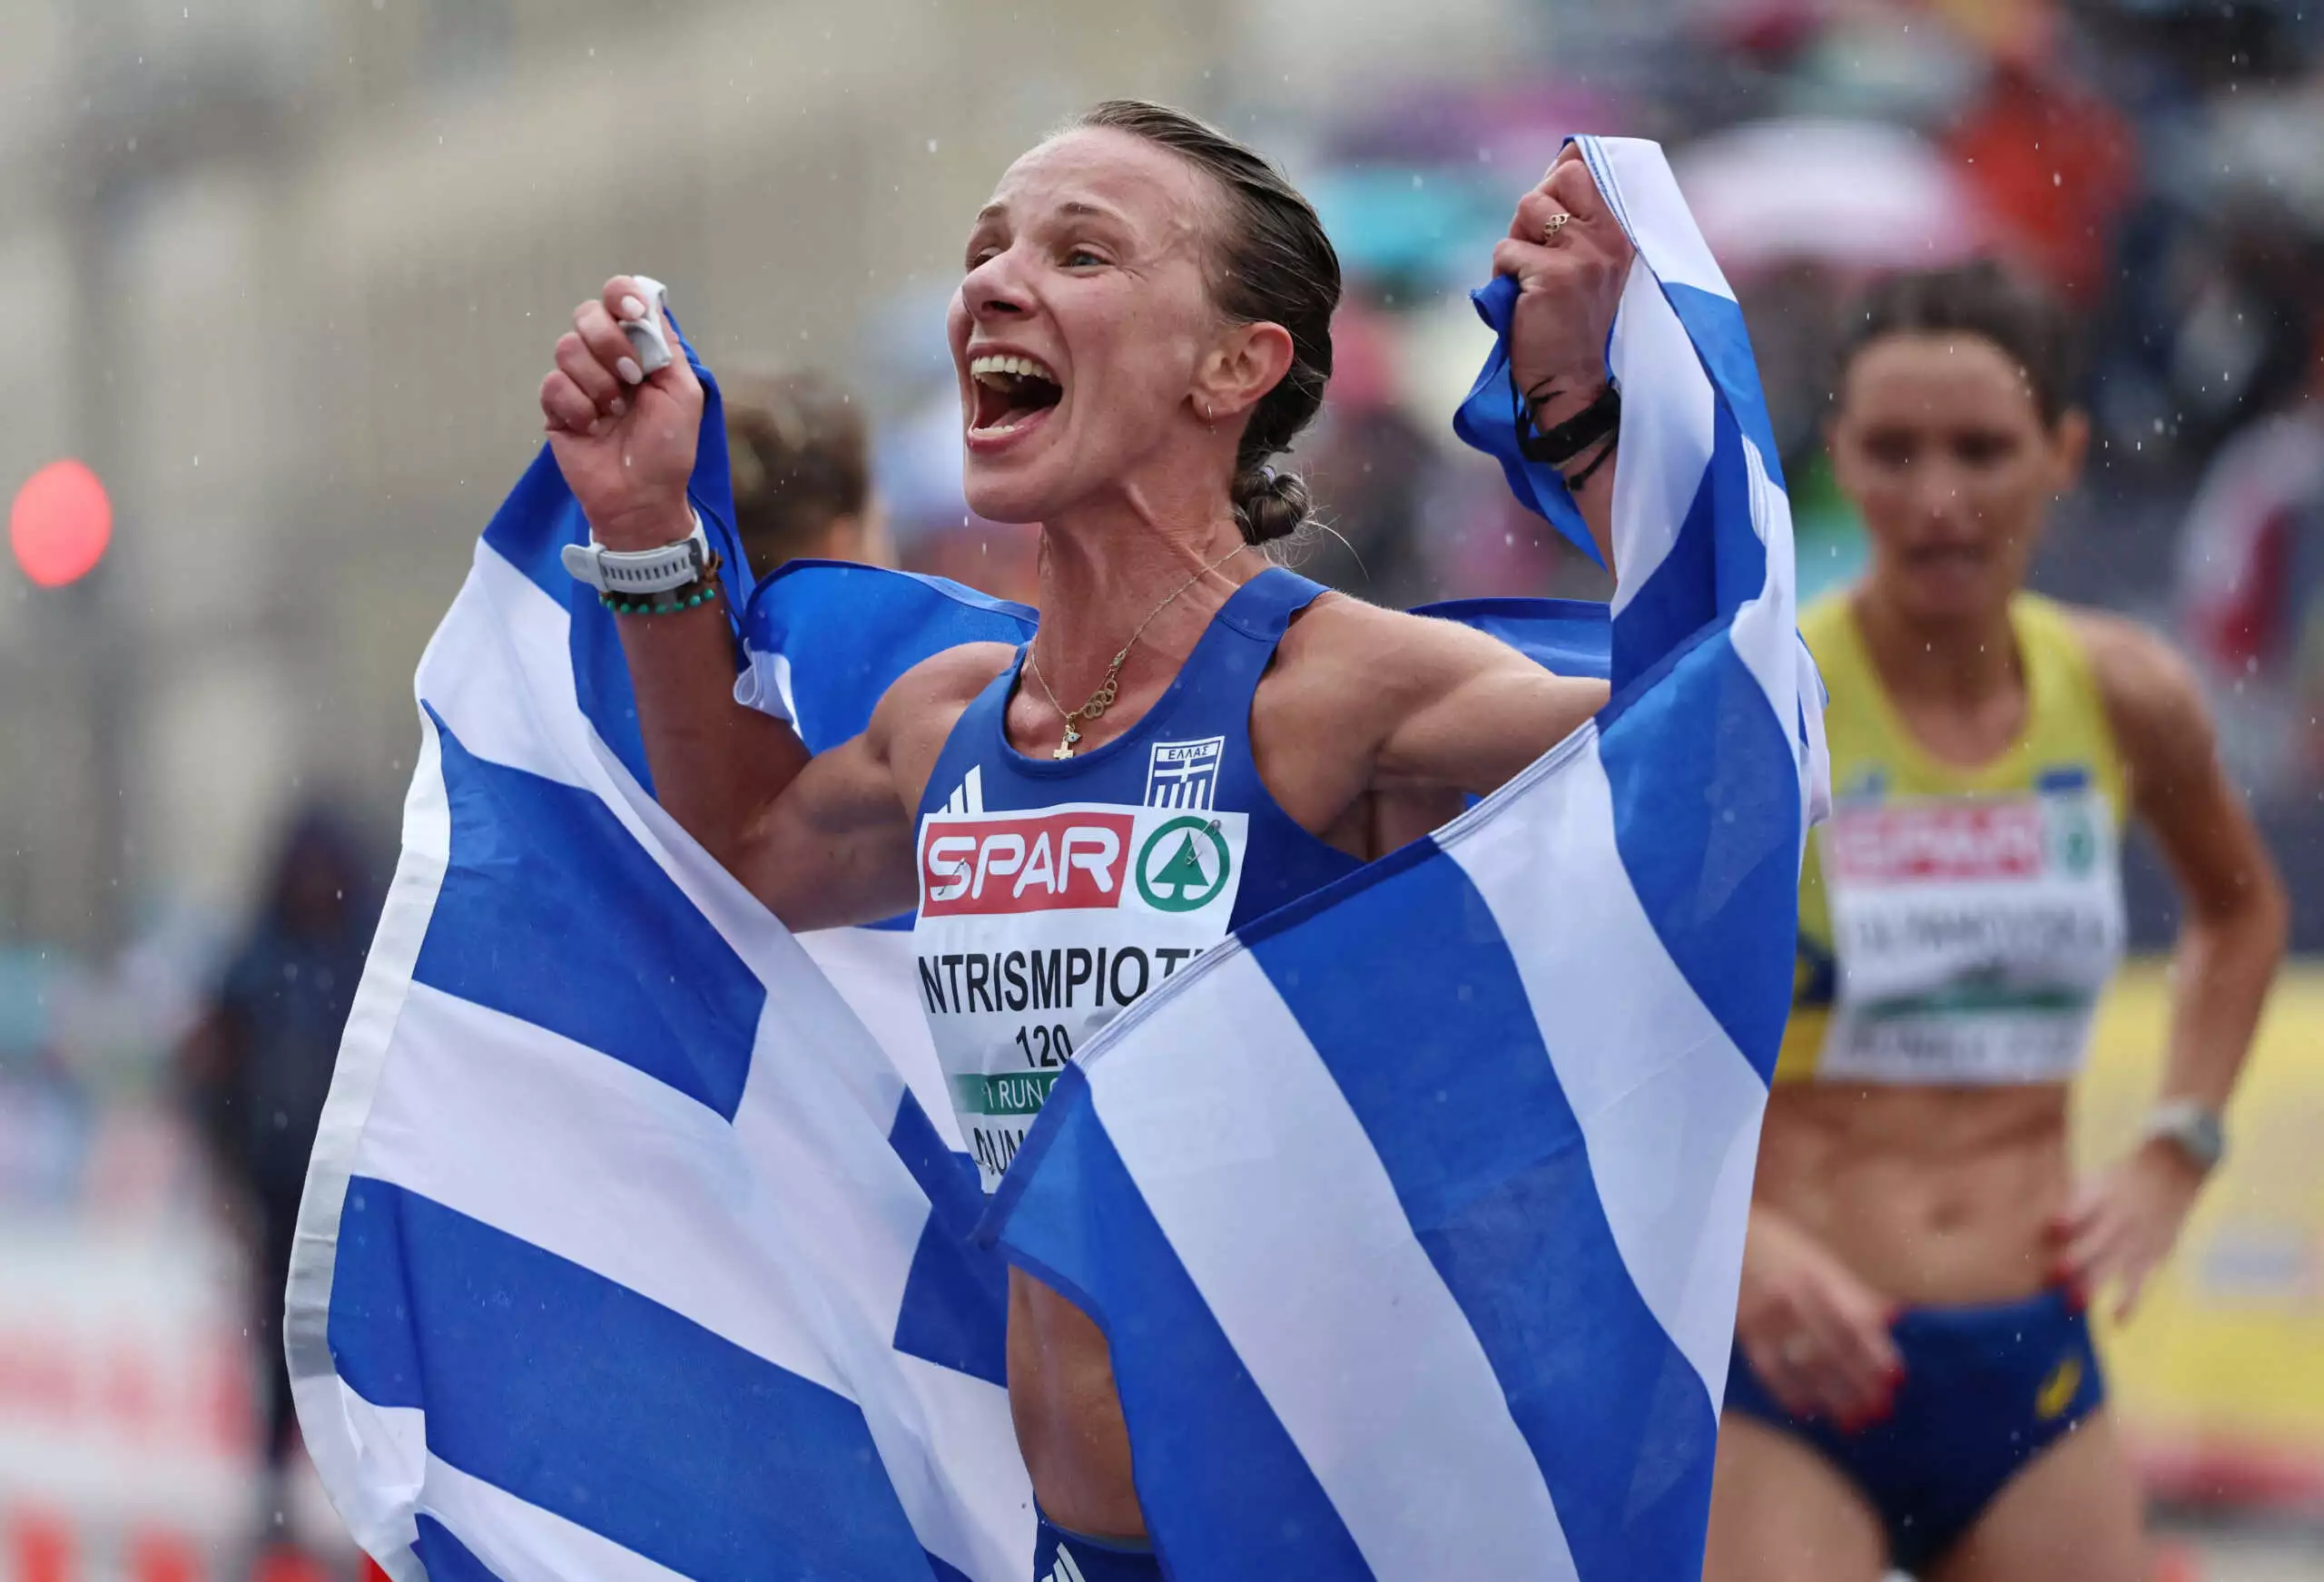 Η Αντιγόνη Ντρισμπιώτη διεκδικεί τον τίτλο της κορυφαίας Ευρωπαίας αθλήτριας